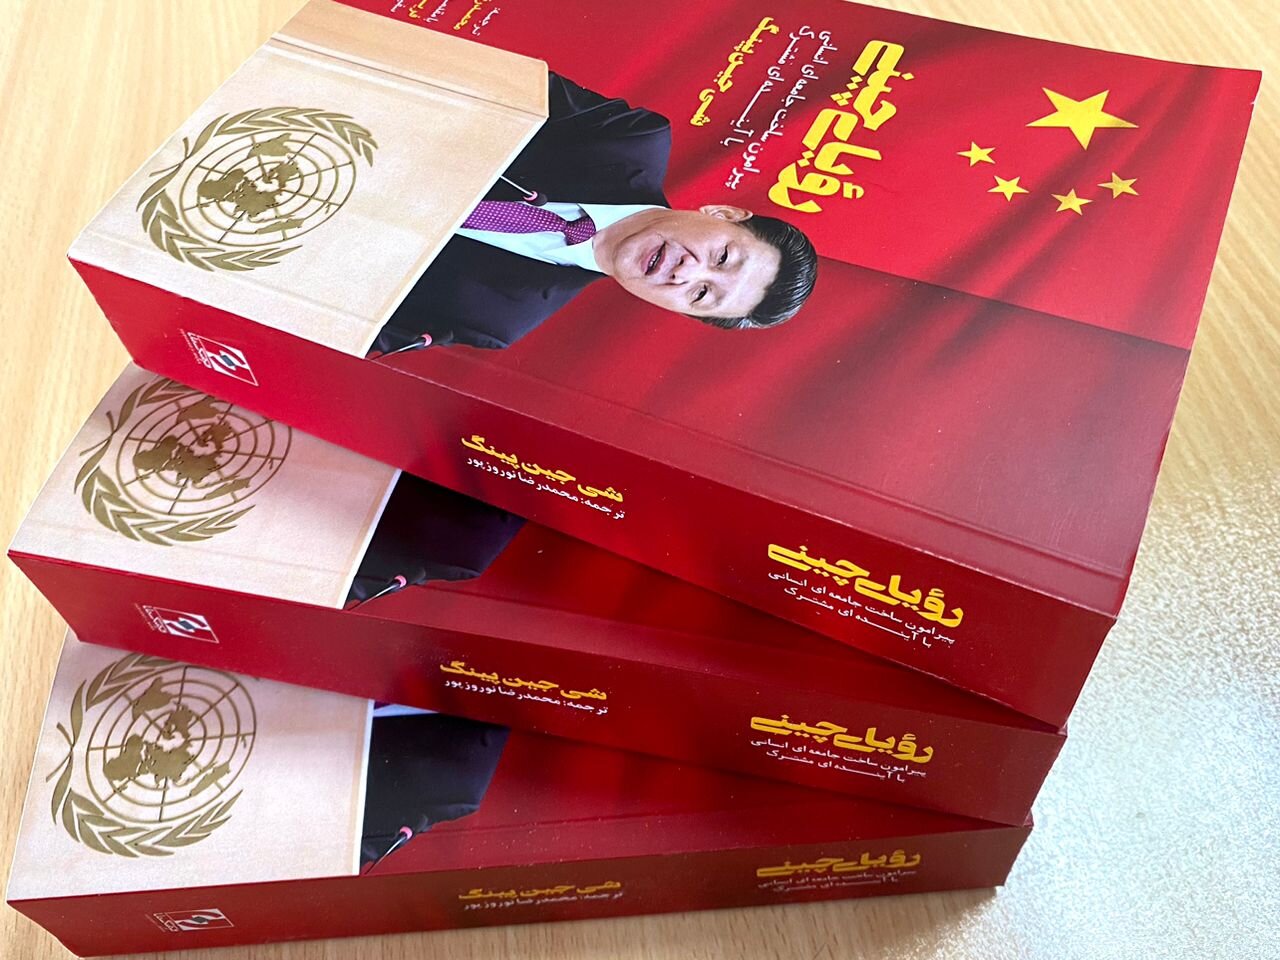 کتاب رویای چینی به چاپ دوم رسید/ شی جین‌پینگ: تنها زمانی که مردم زندگی خوبی داشته باشند، کشور می تواند پیشرفت کند